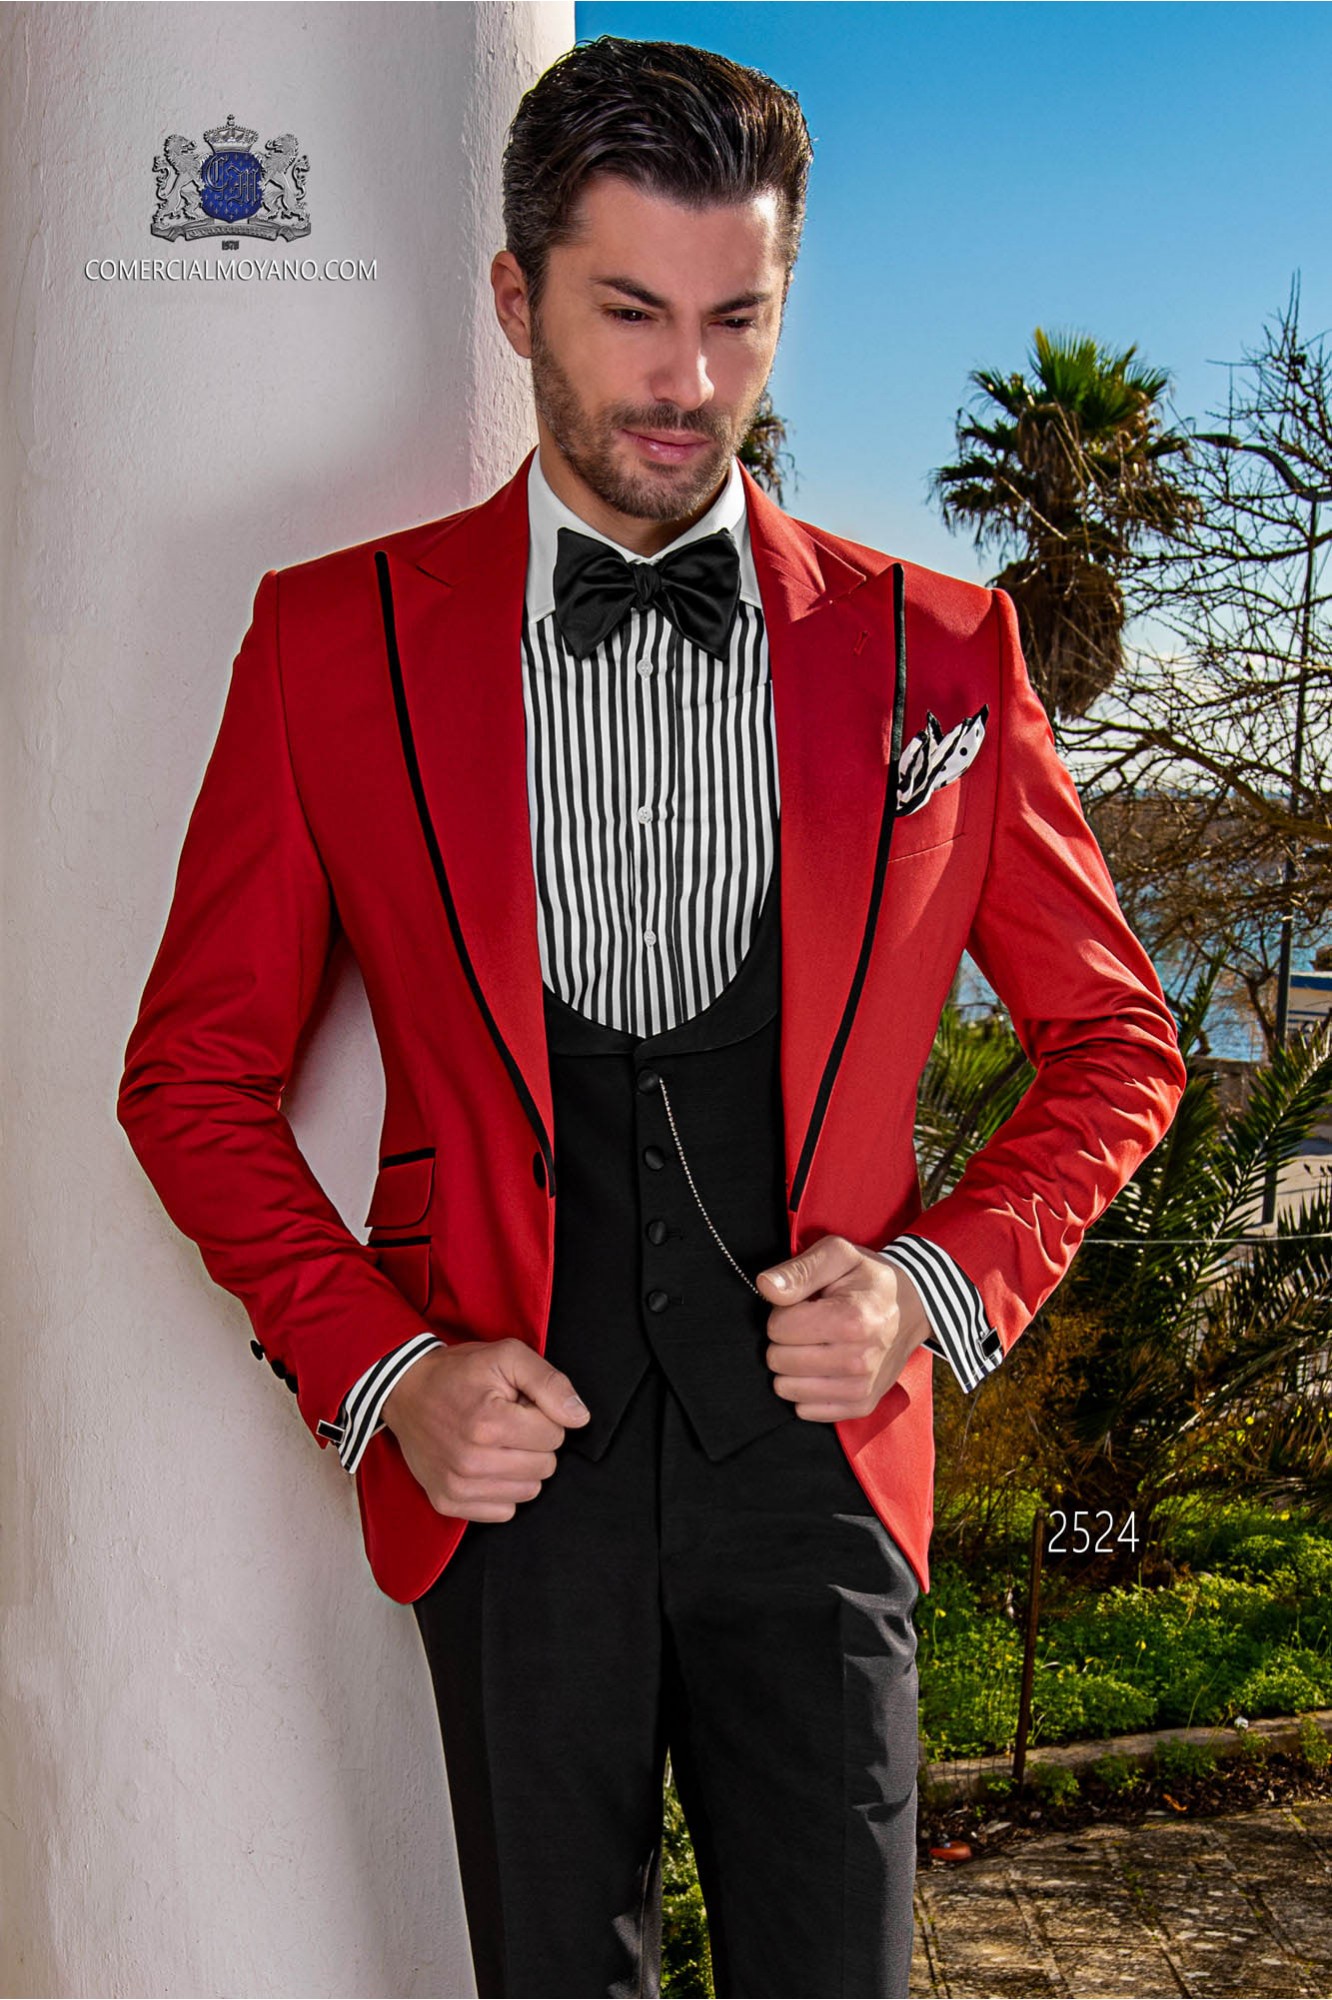 Traje rojo algodón con perfil en contraste negro modelo: 2524 Mario Moyano colección Hipster